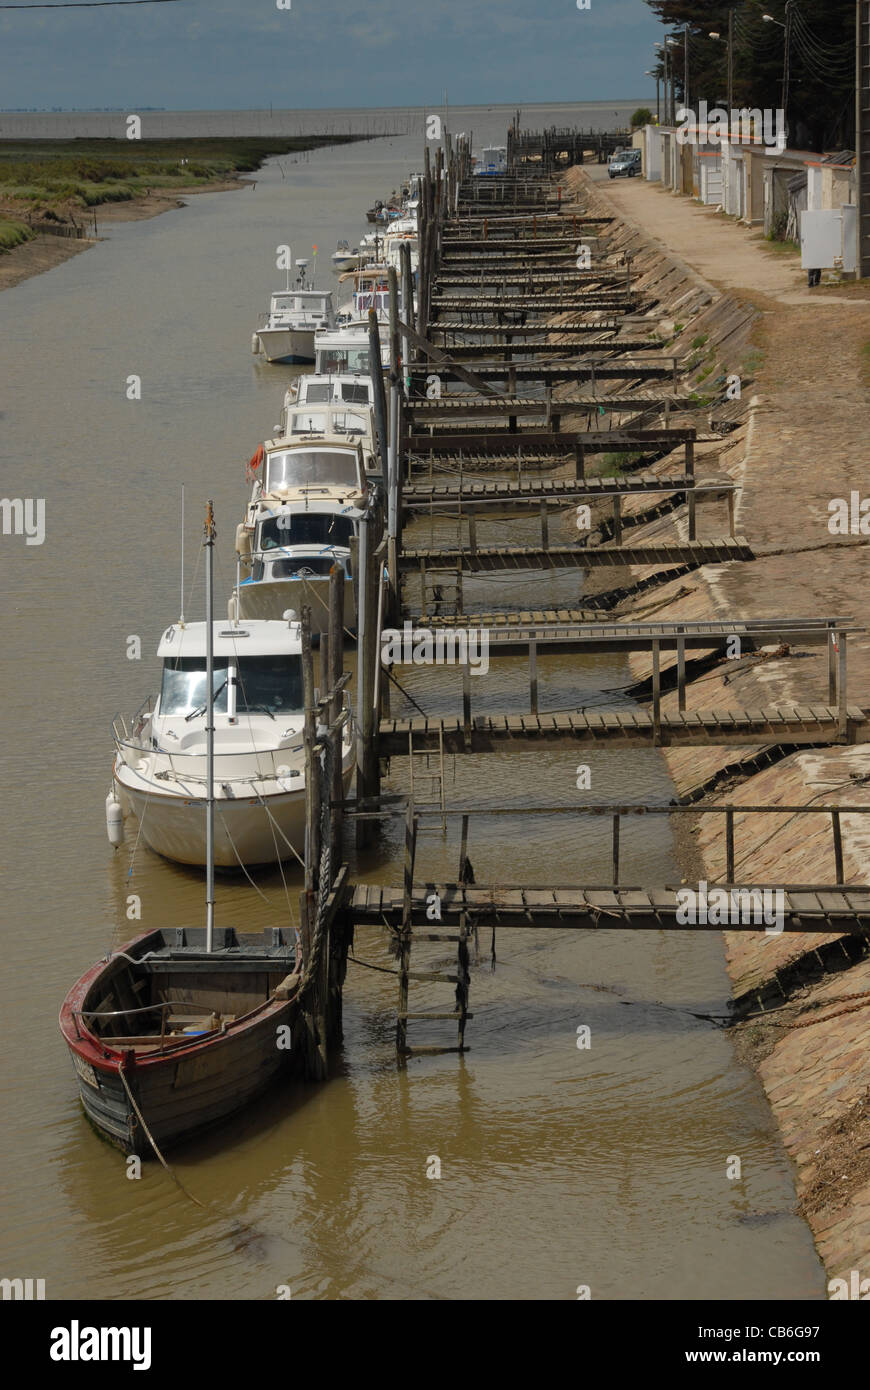 Les bateaux de pêche et yachts amarrés dans le port de collet dans le marais Breton de la Loire-Atlantique dans les pays de la Loire, France Banque D'Images